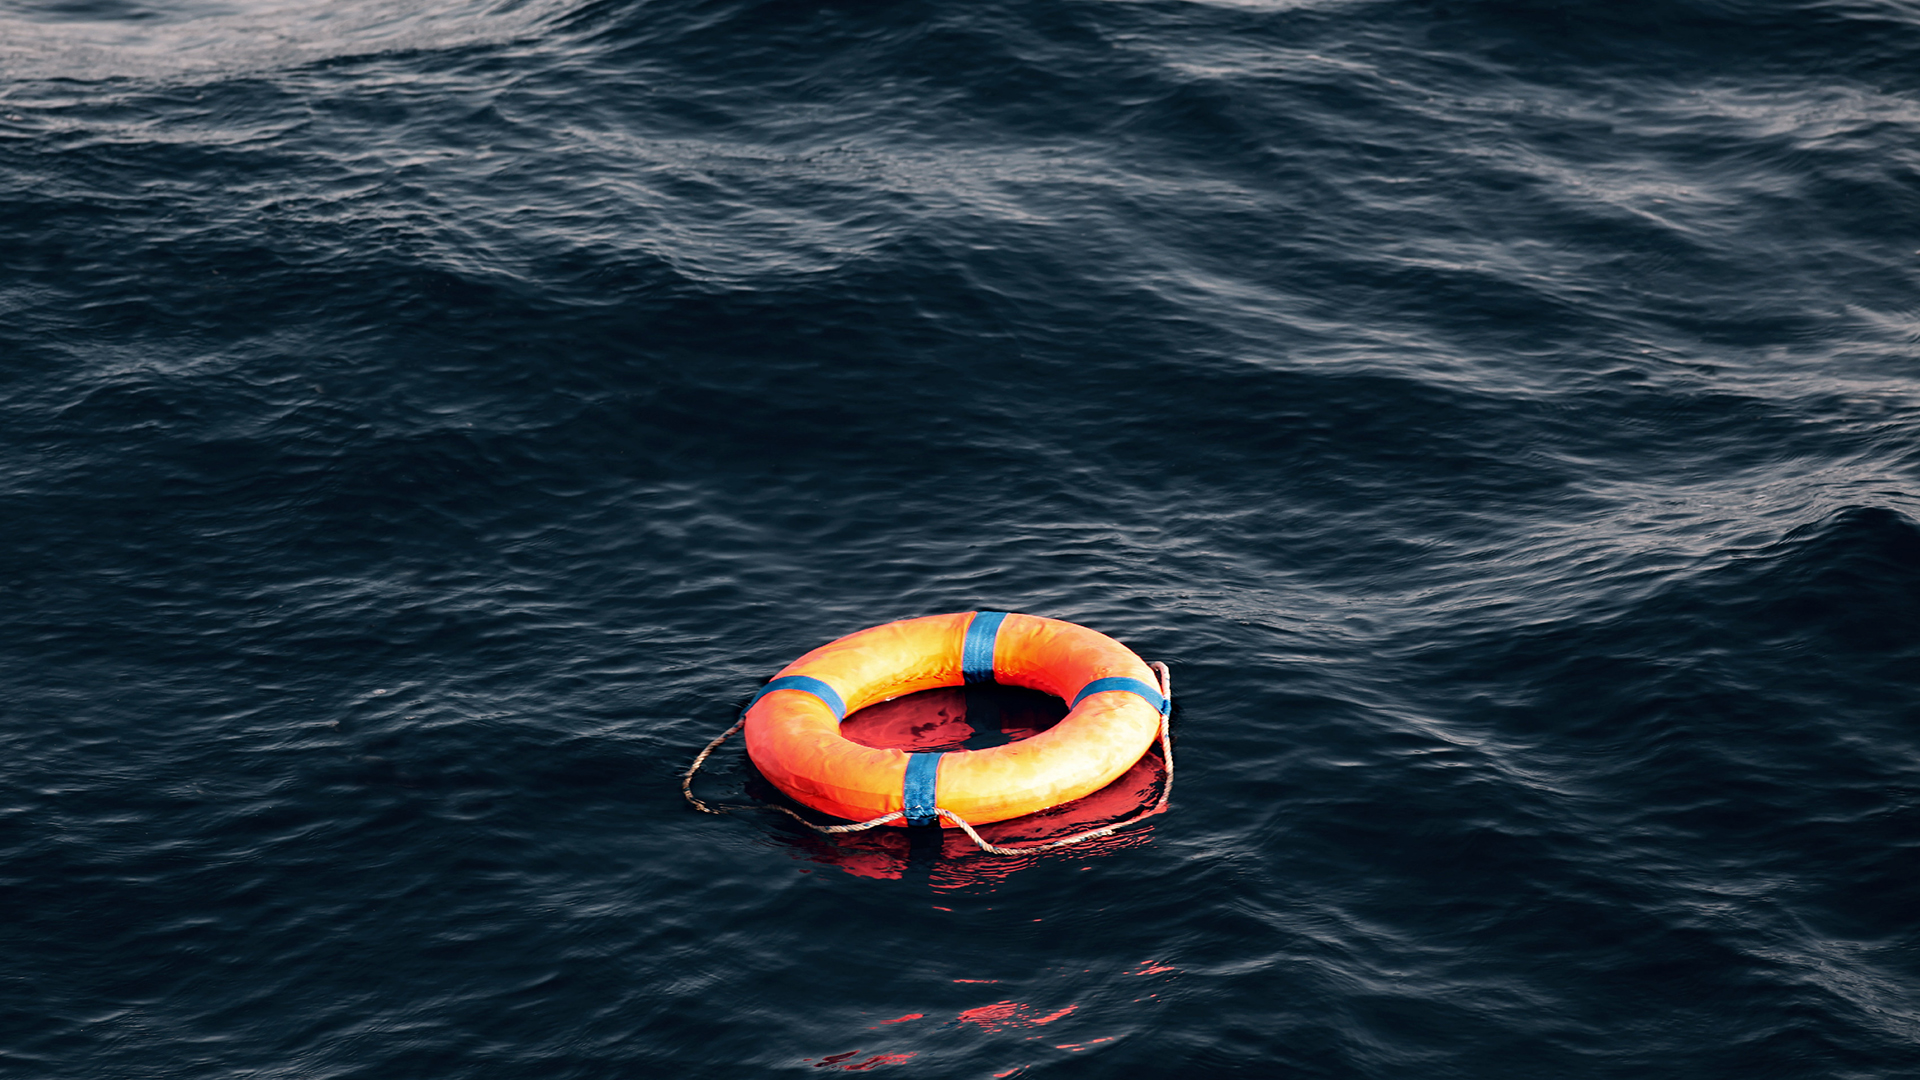 Ein Rettungsring schwimmt auf dem Mittelmeer. | picture alliance / JOKER